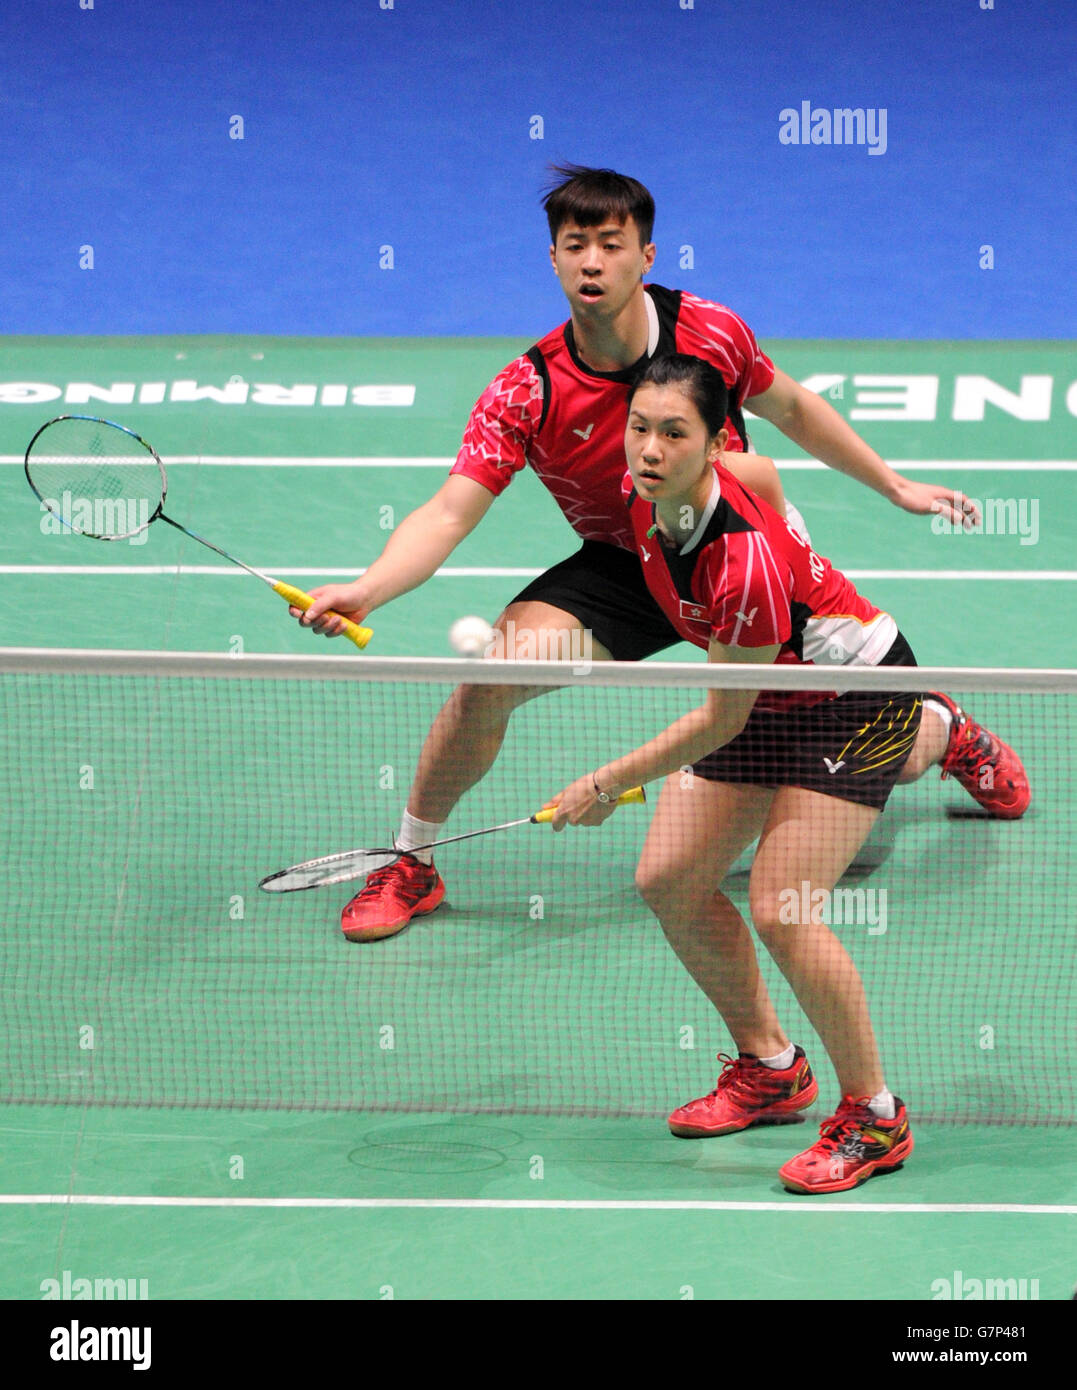 Lee Chun Hei et Chau Hoi Wah (avant) de Hong Kong en action pendant le deuxième jour des Championnats de badminton Yonex de toute l'Angleterre de 2015 à la Barclaycard Arena, Birmingham. Banque D'Images